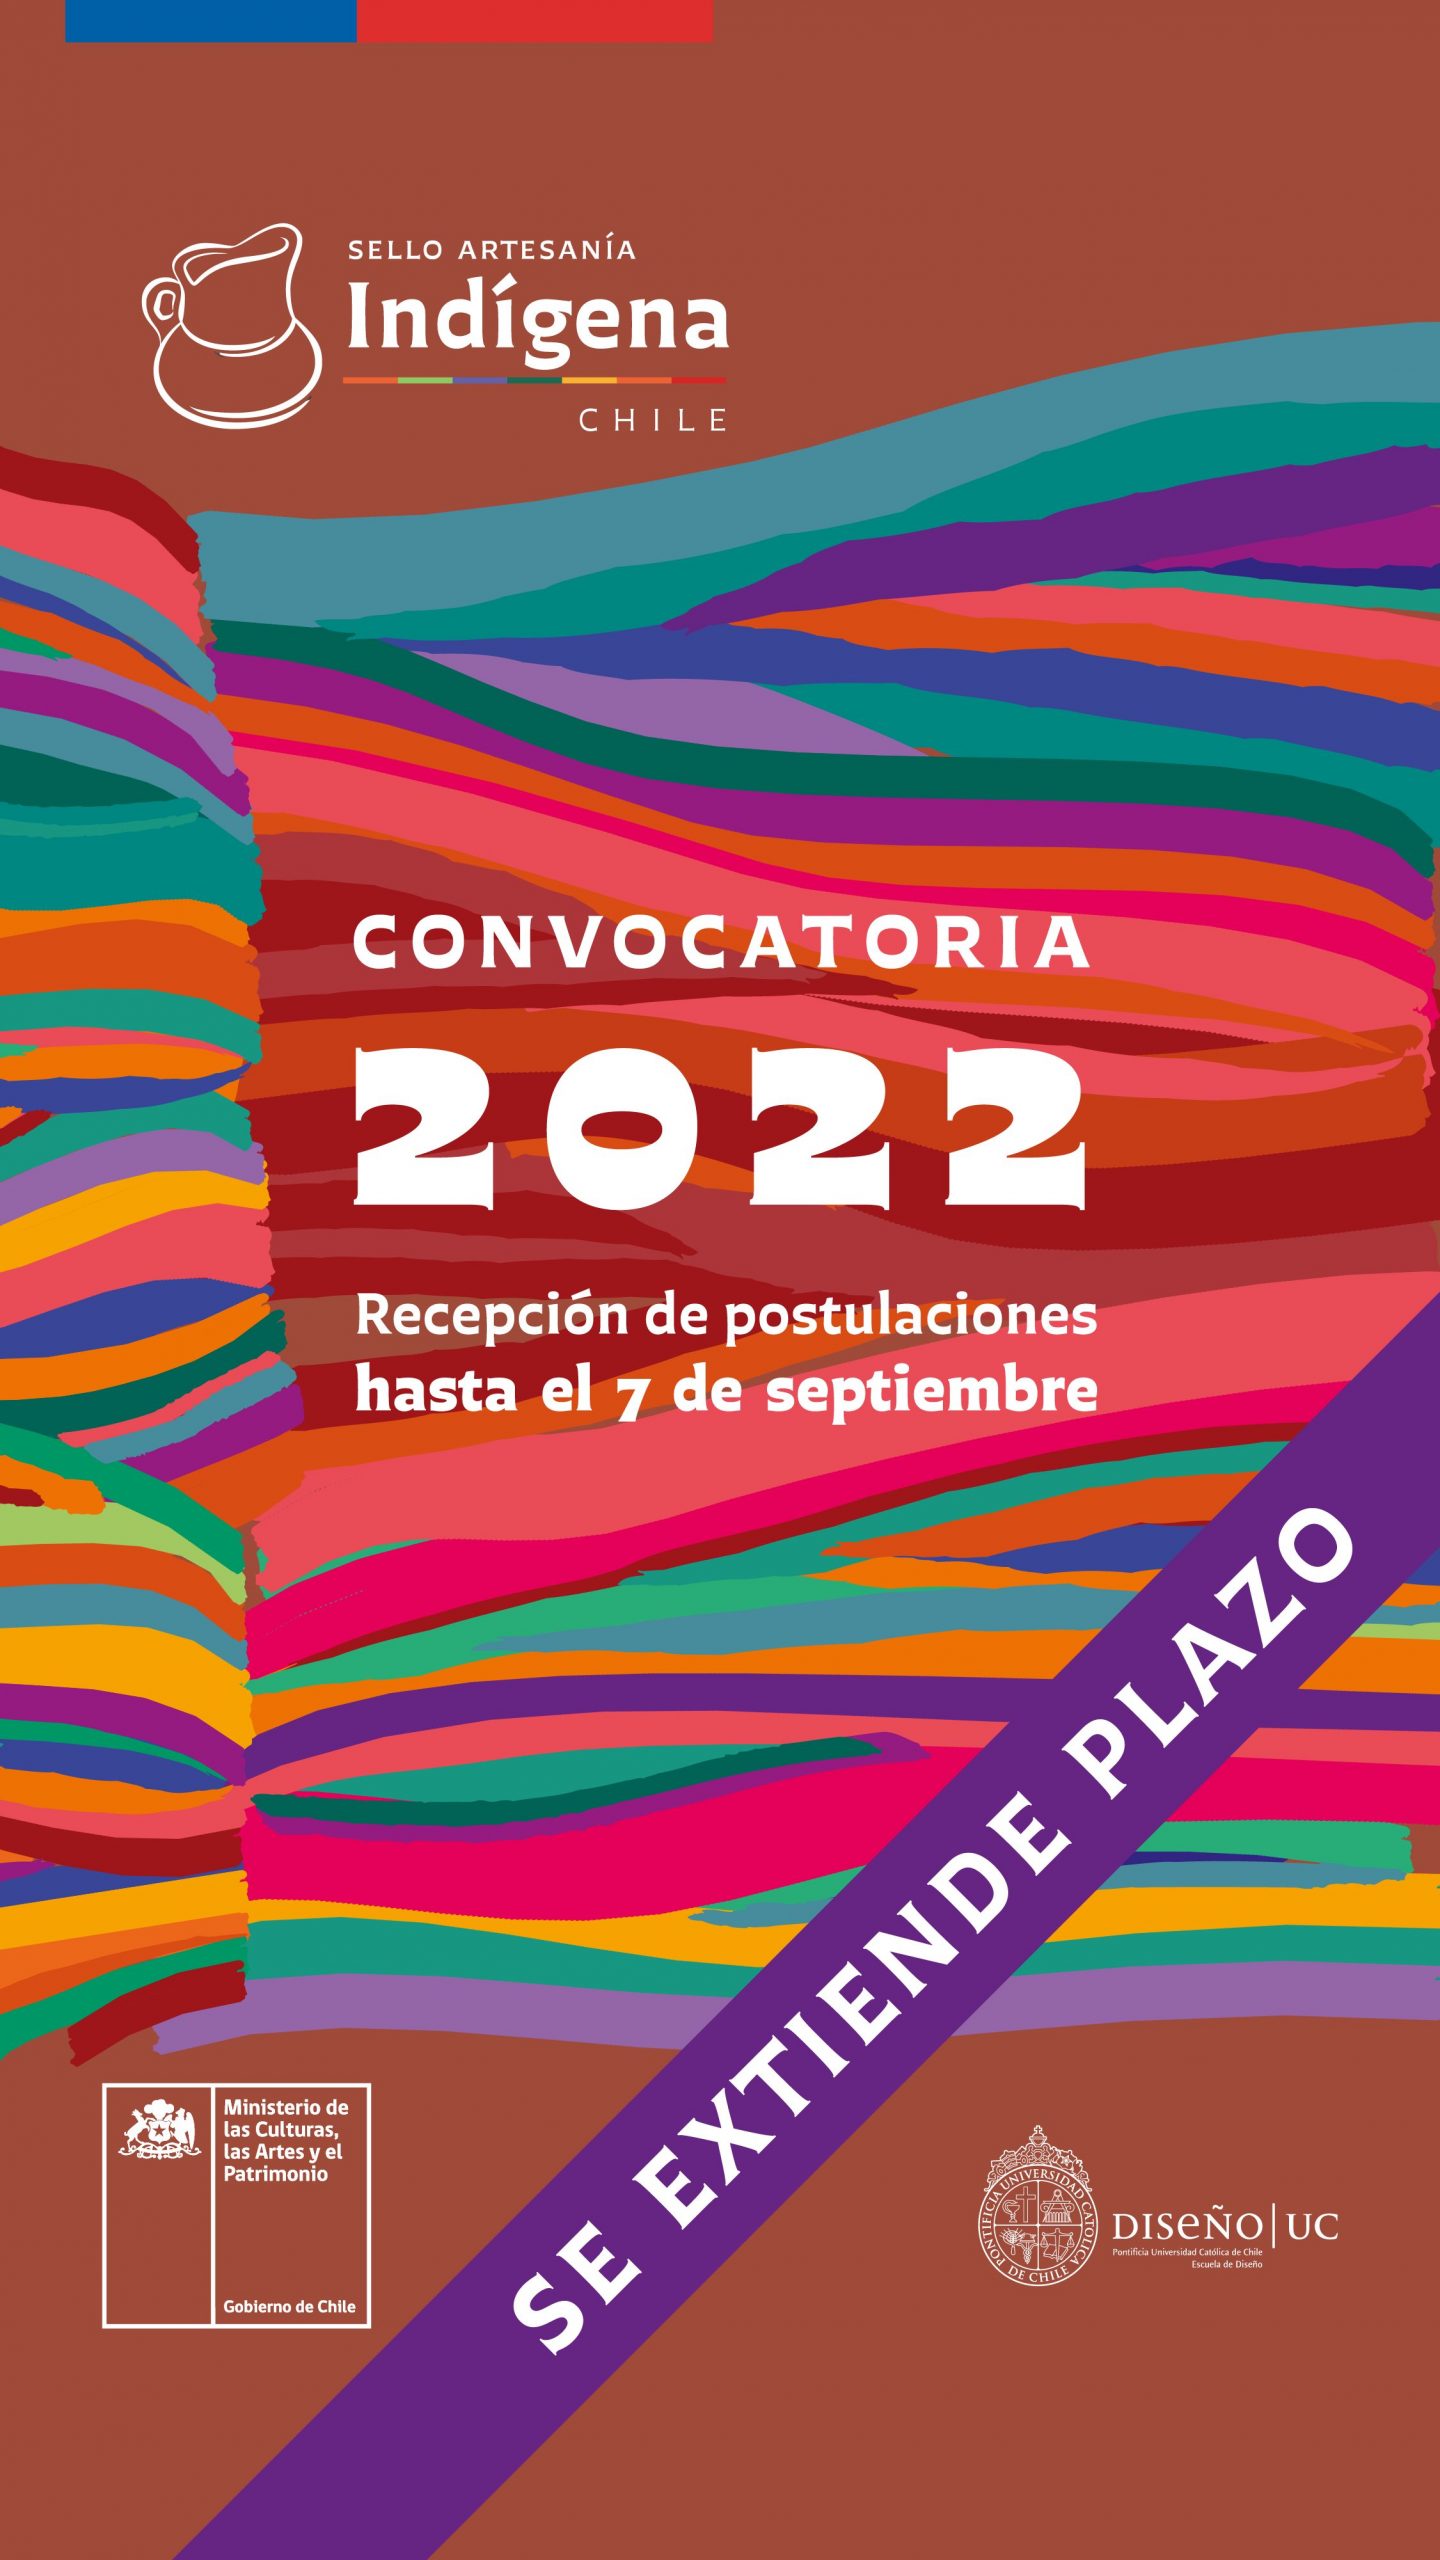 Hasta el 7 de septiembre se extiende plazo de postulación para Sello Artesanía Indígena 2022